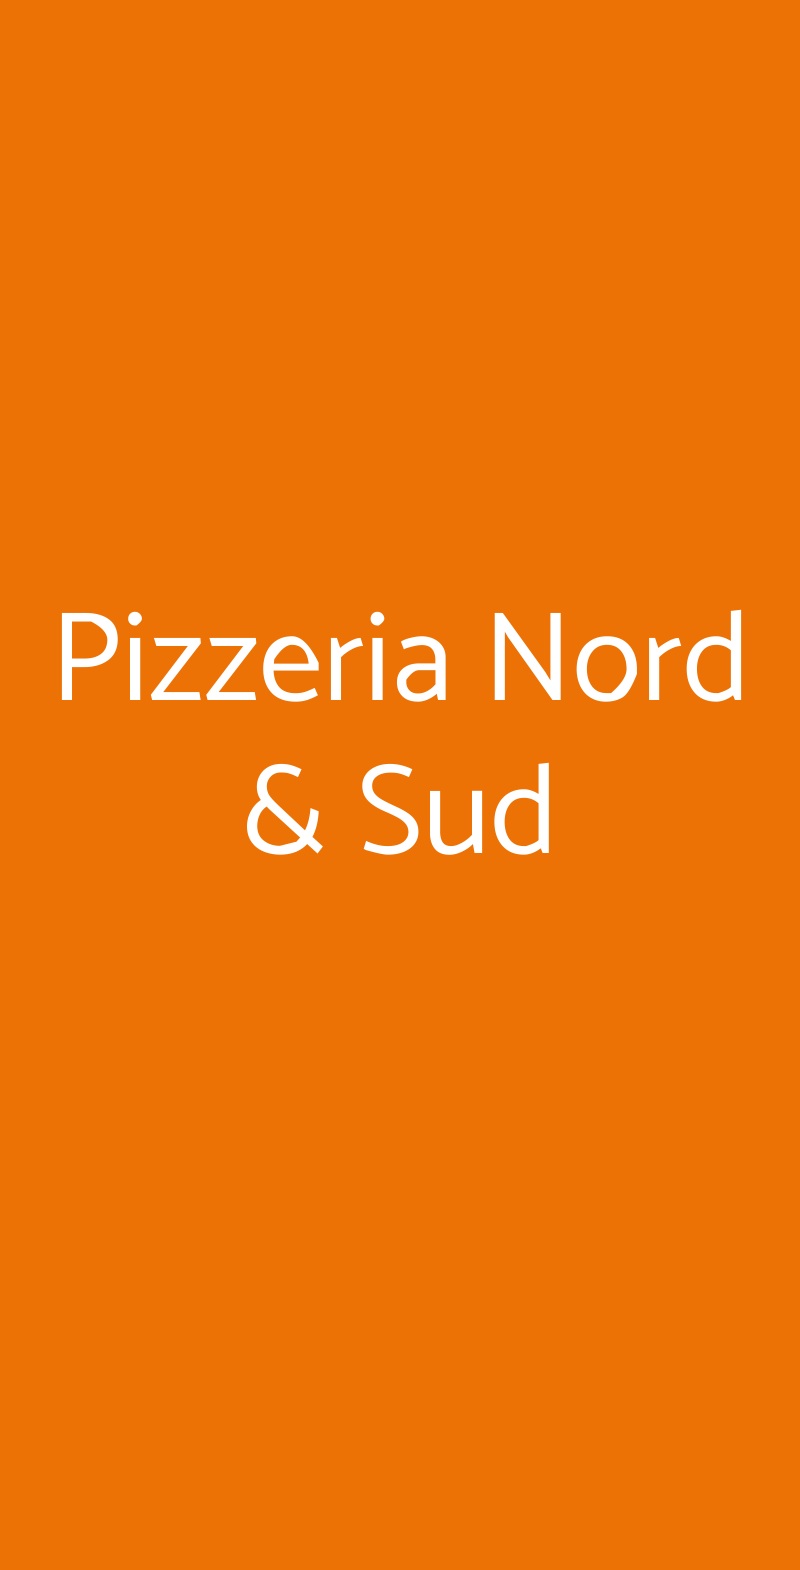 Pizzeria Nord & Sud Milano menù 1 pagina